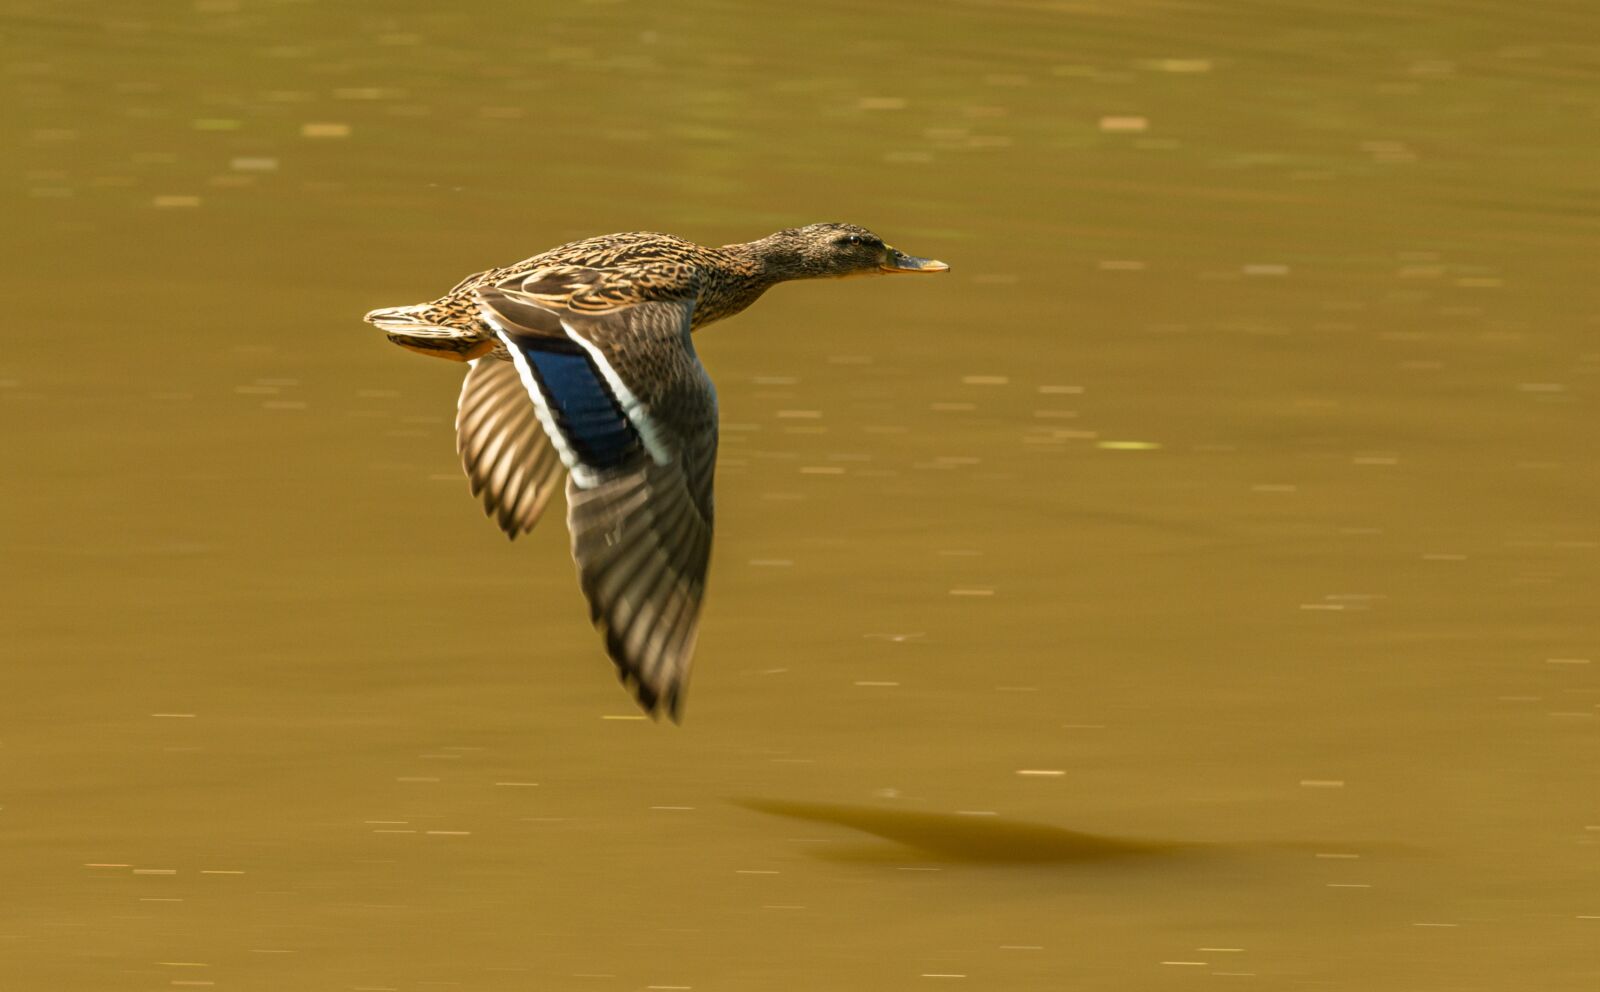 Nikon D800E sample photo. Duck, bird, flying photography